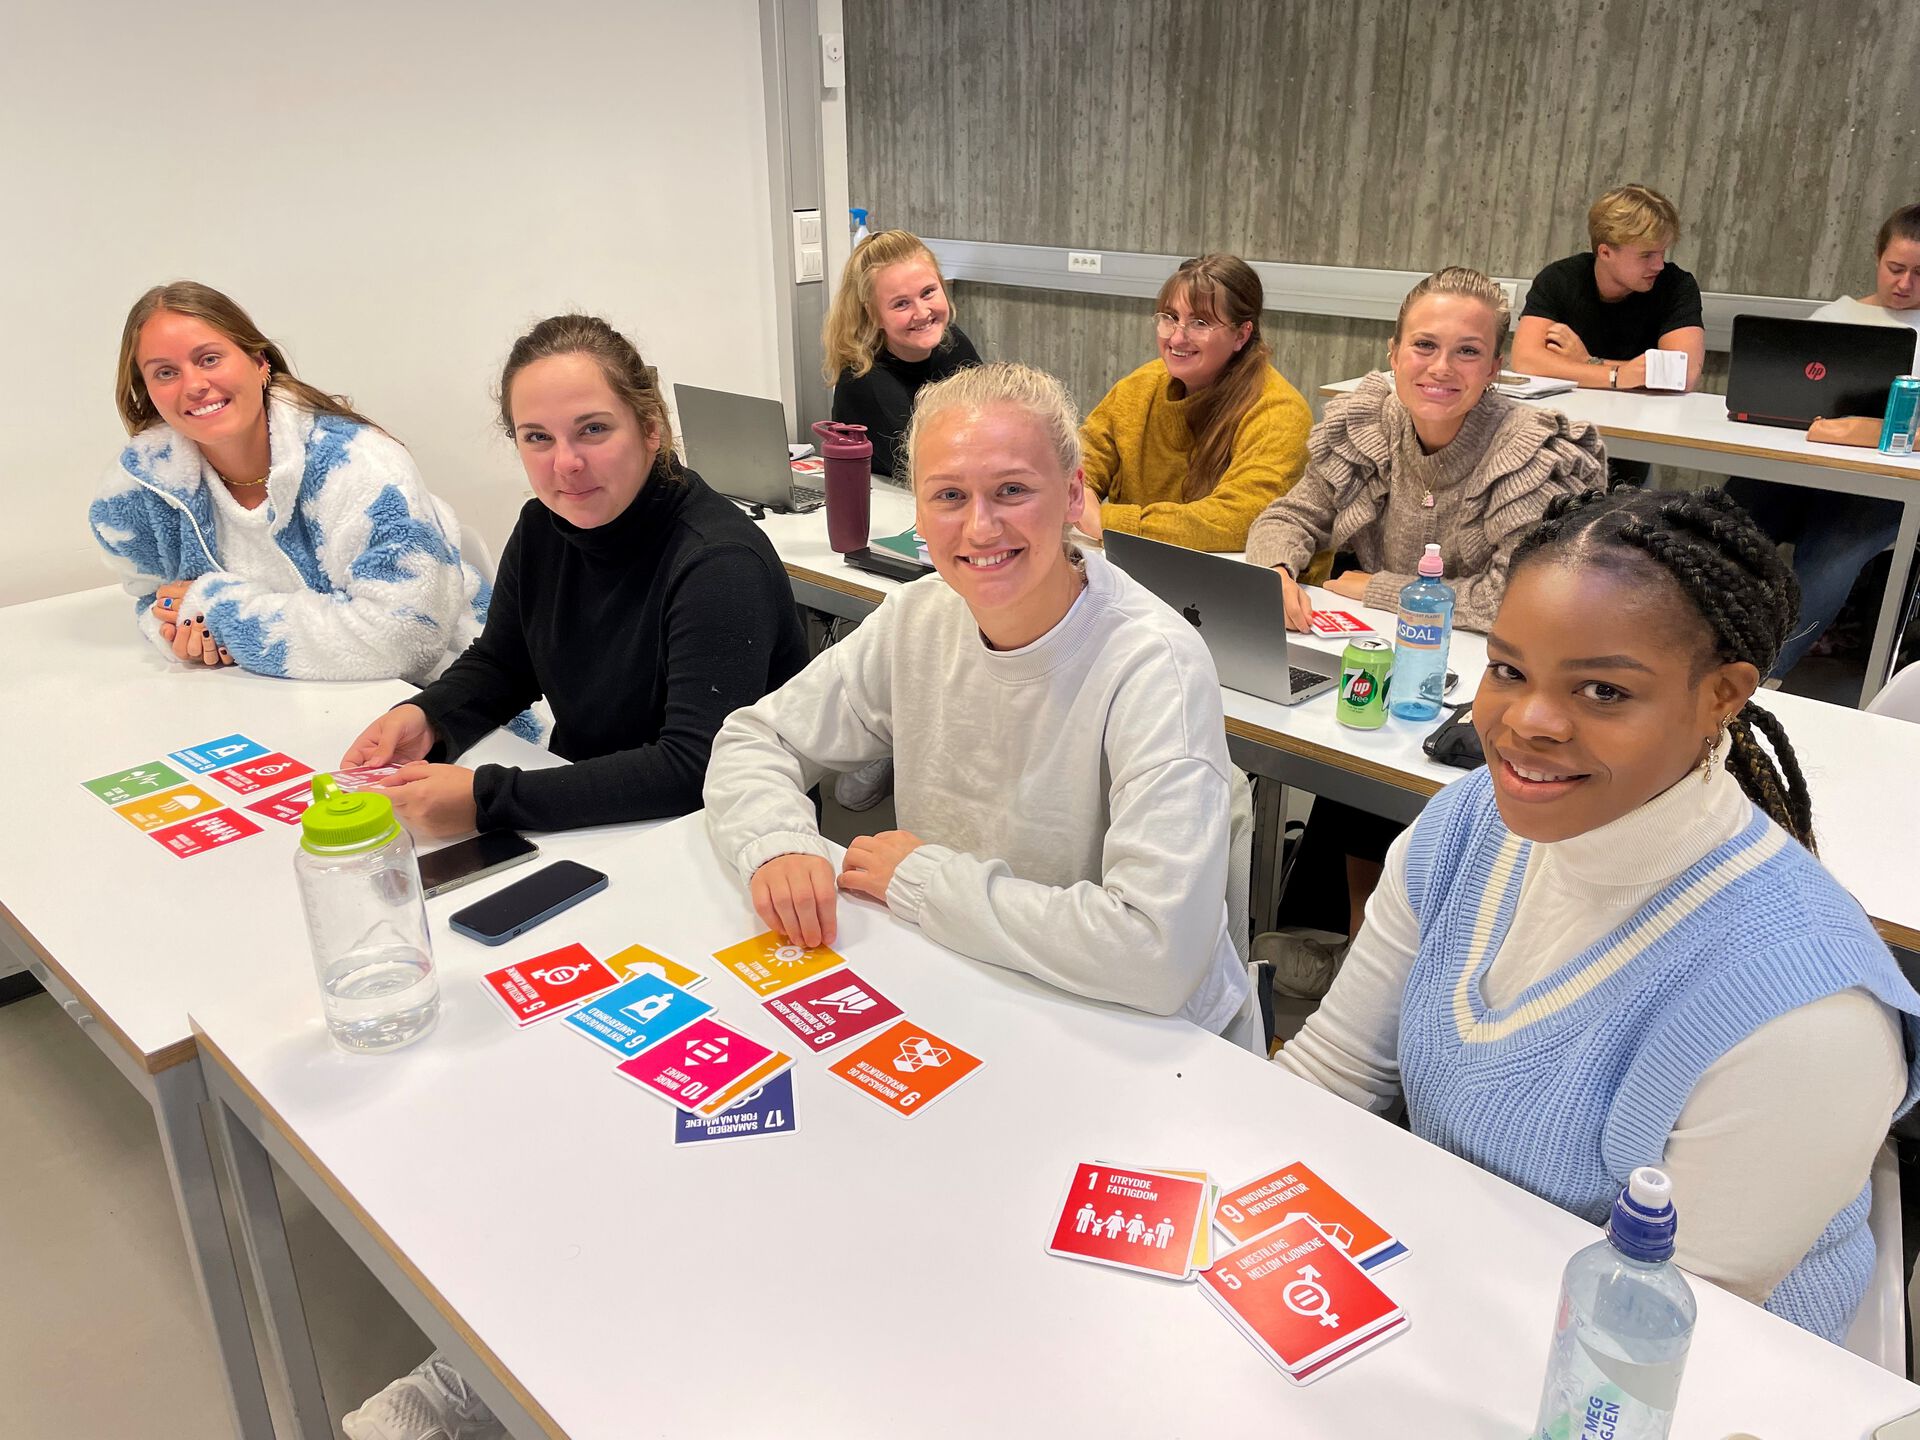 I forgrunnen av bildet sitter 4 kvinnelige studenter ved Grunnskolelærerutdanningen og arbeider med sitt Entreprenørskapsprosjekt. Flere studenter ses i bakgrunnen.